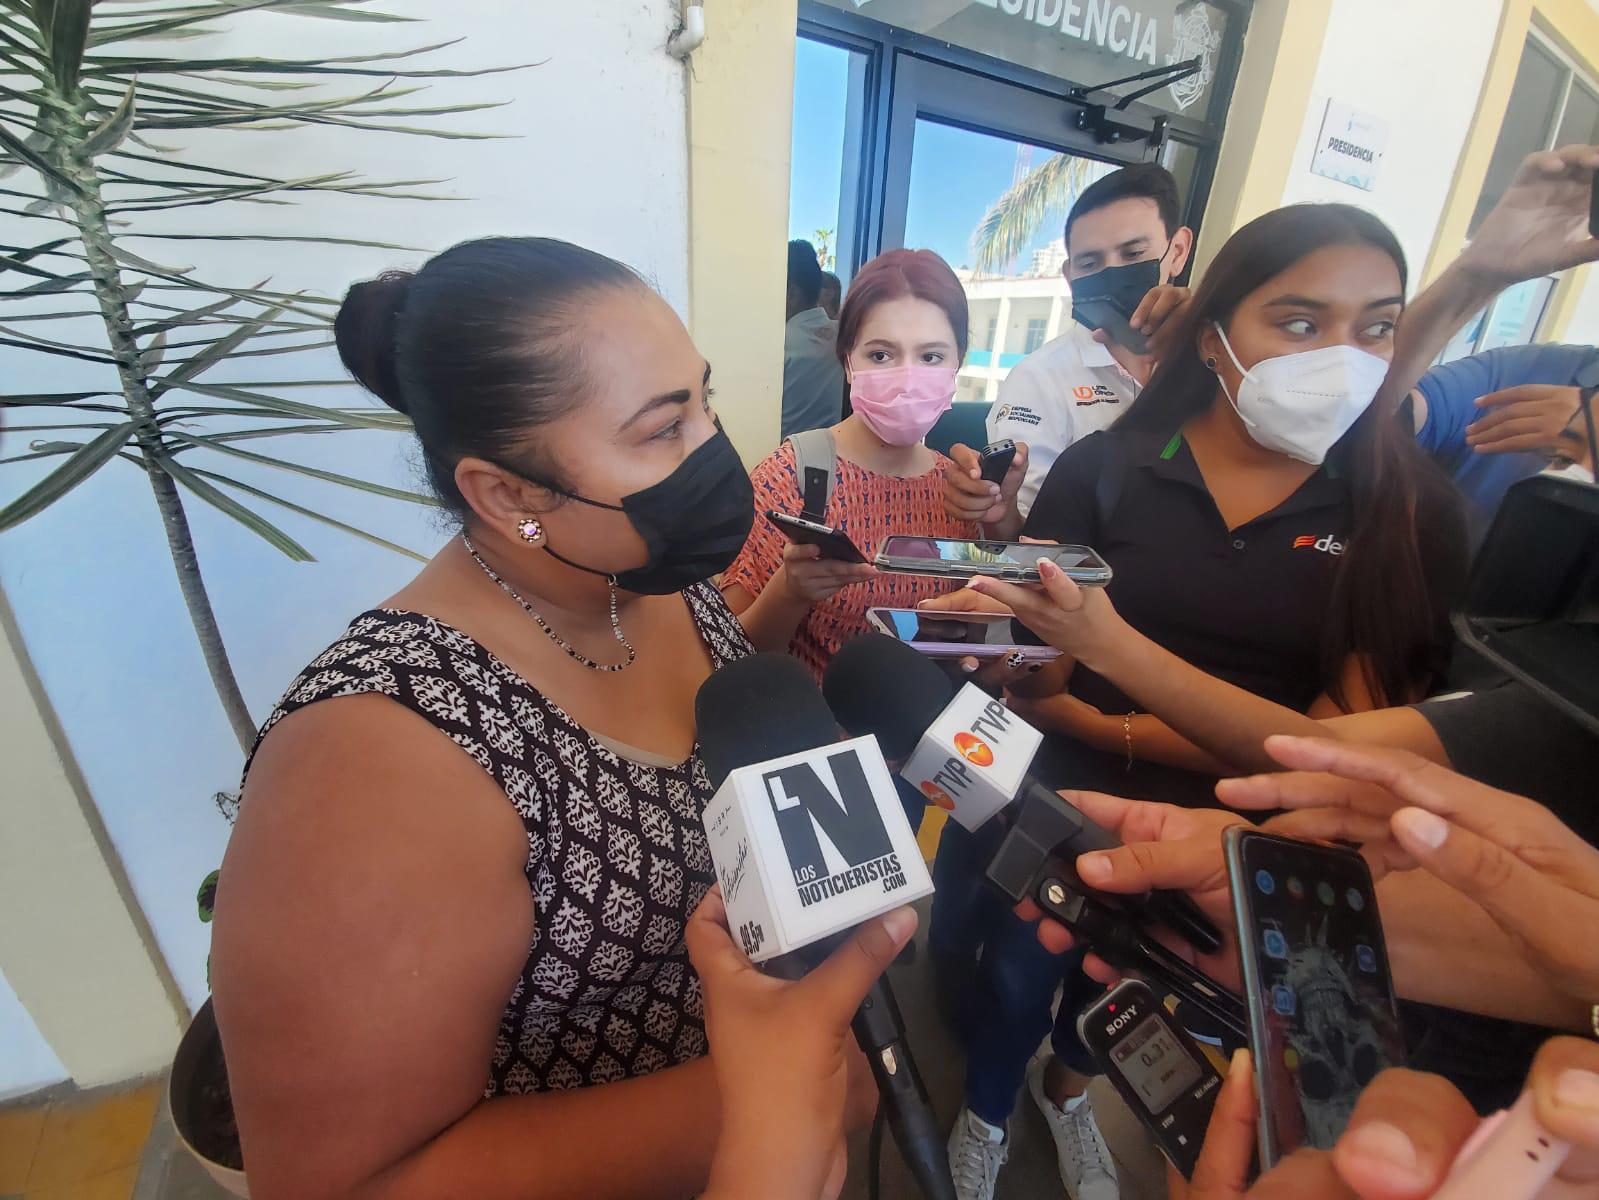 $!Denuncian relajamiento de protocolos sanitarios en Tianguis de la Juárez